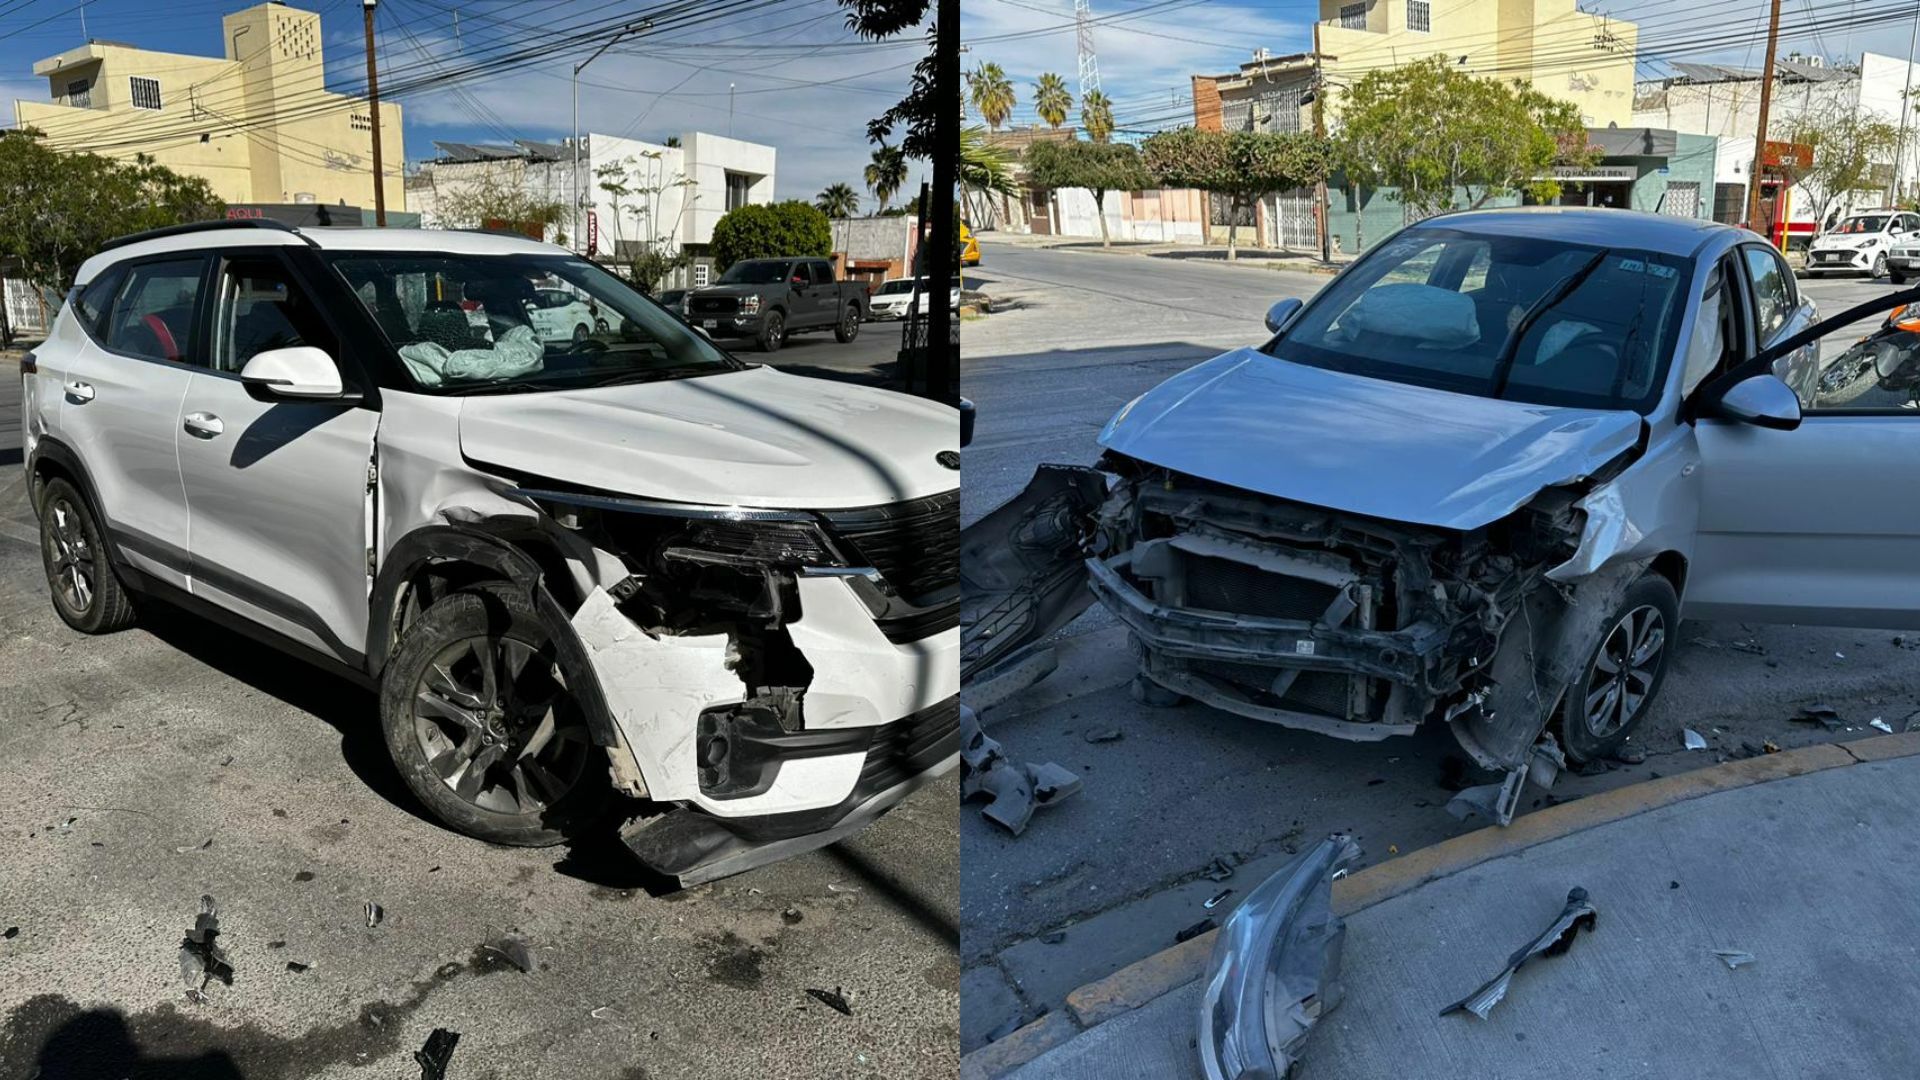 Daños materiales estimados en 130 mil pesos fue el saldo que dejó un accidente registrado la tarde del sábado la intersección de la avenida Abasolo y calle Leona Vicario en el sector Centro de Torreón.